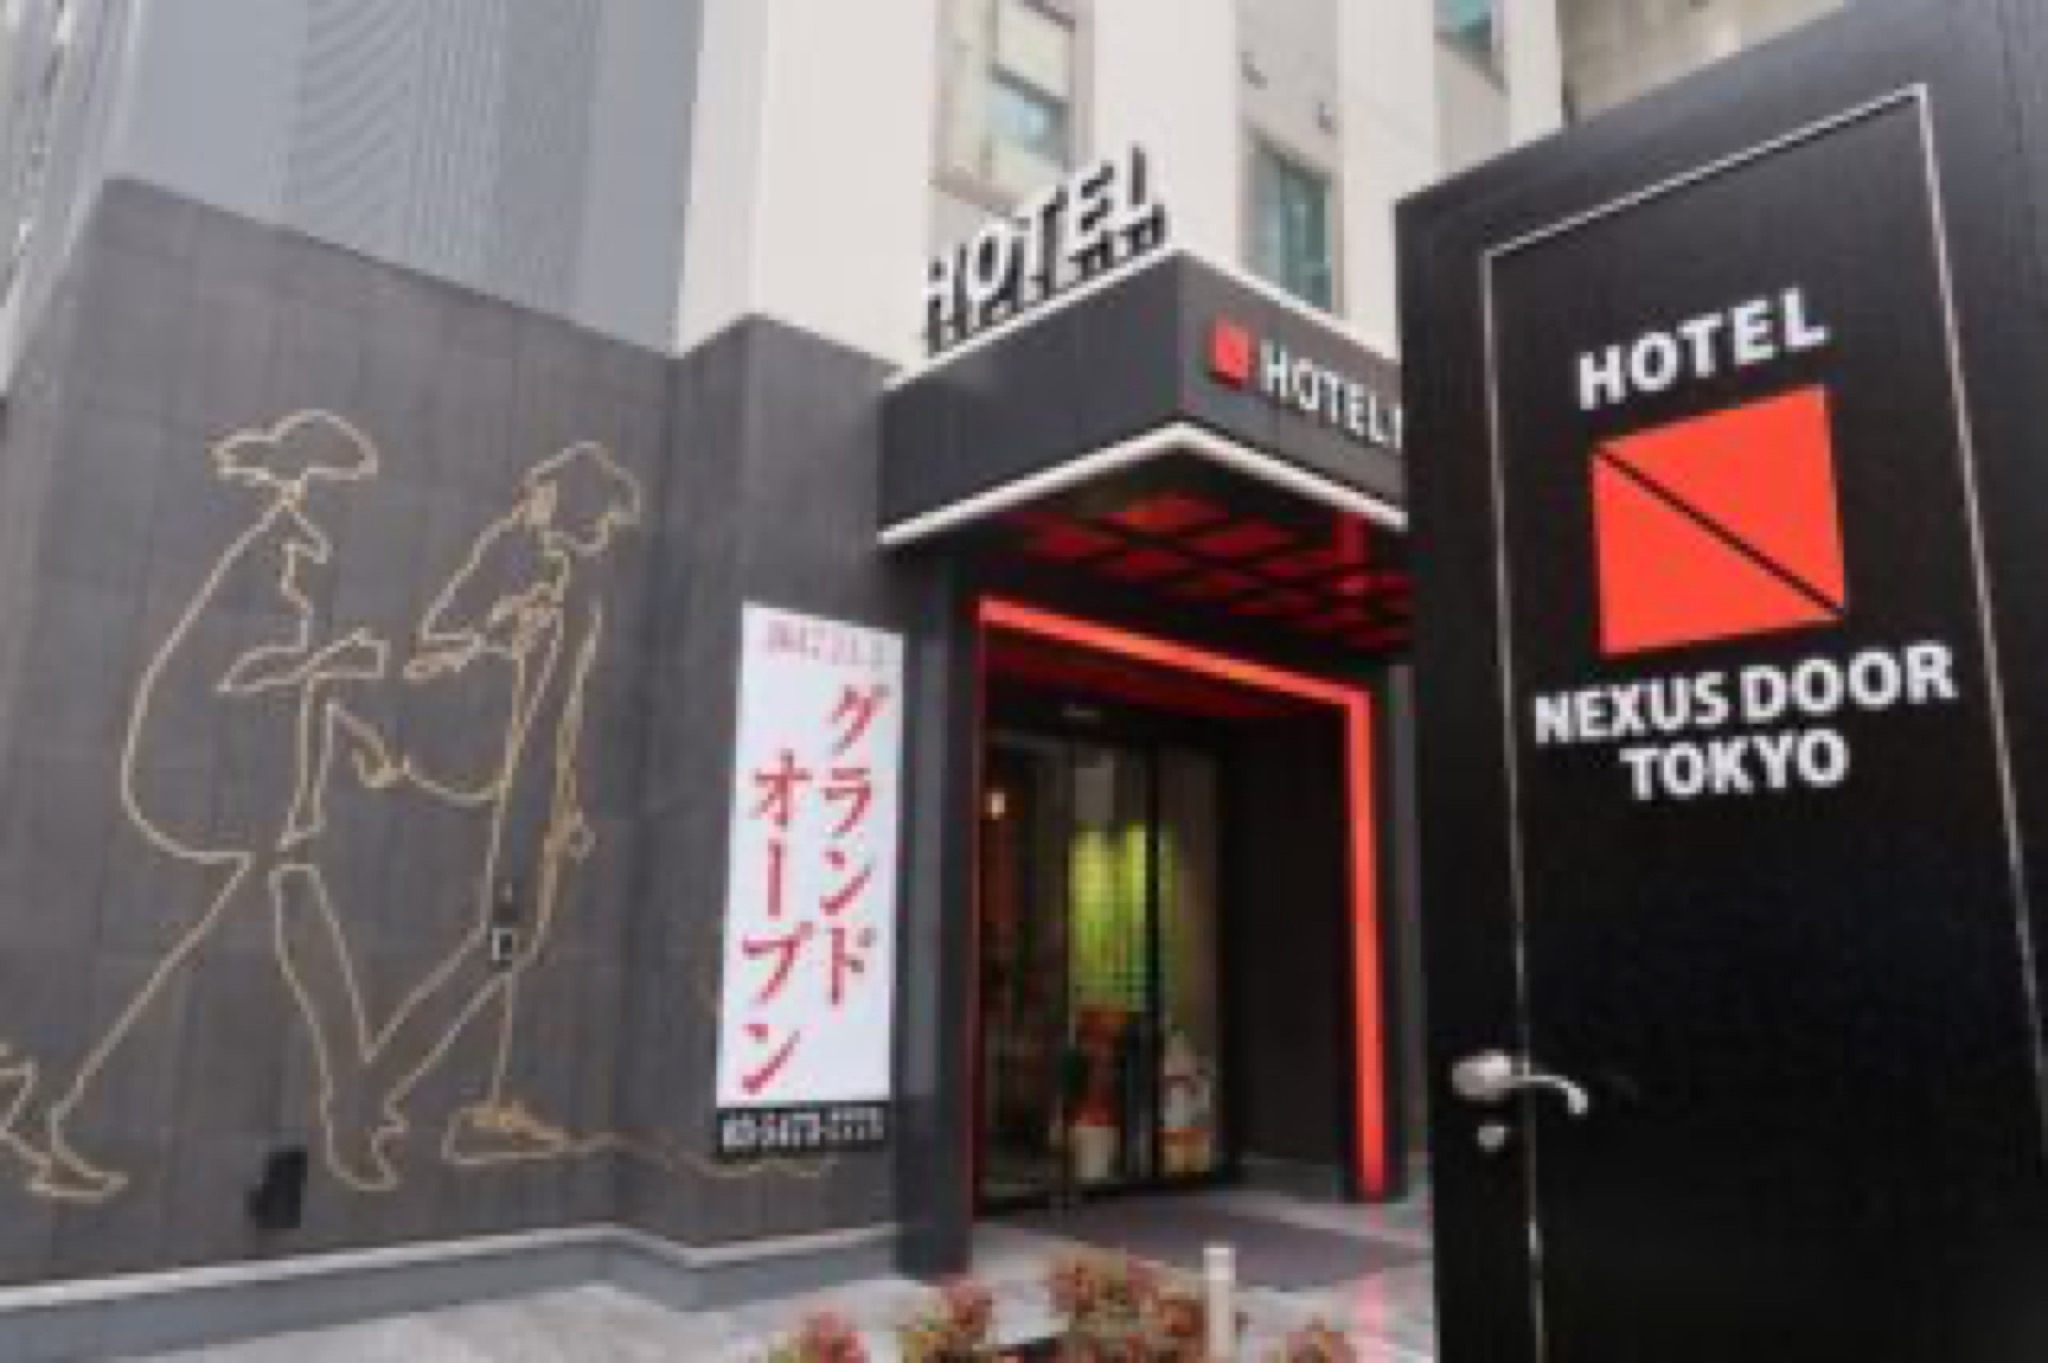 tokyo hotel nexus door